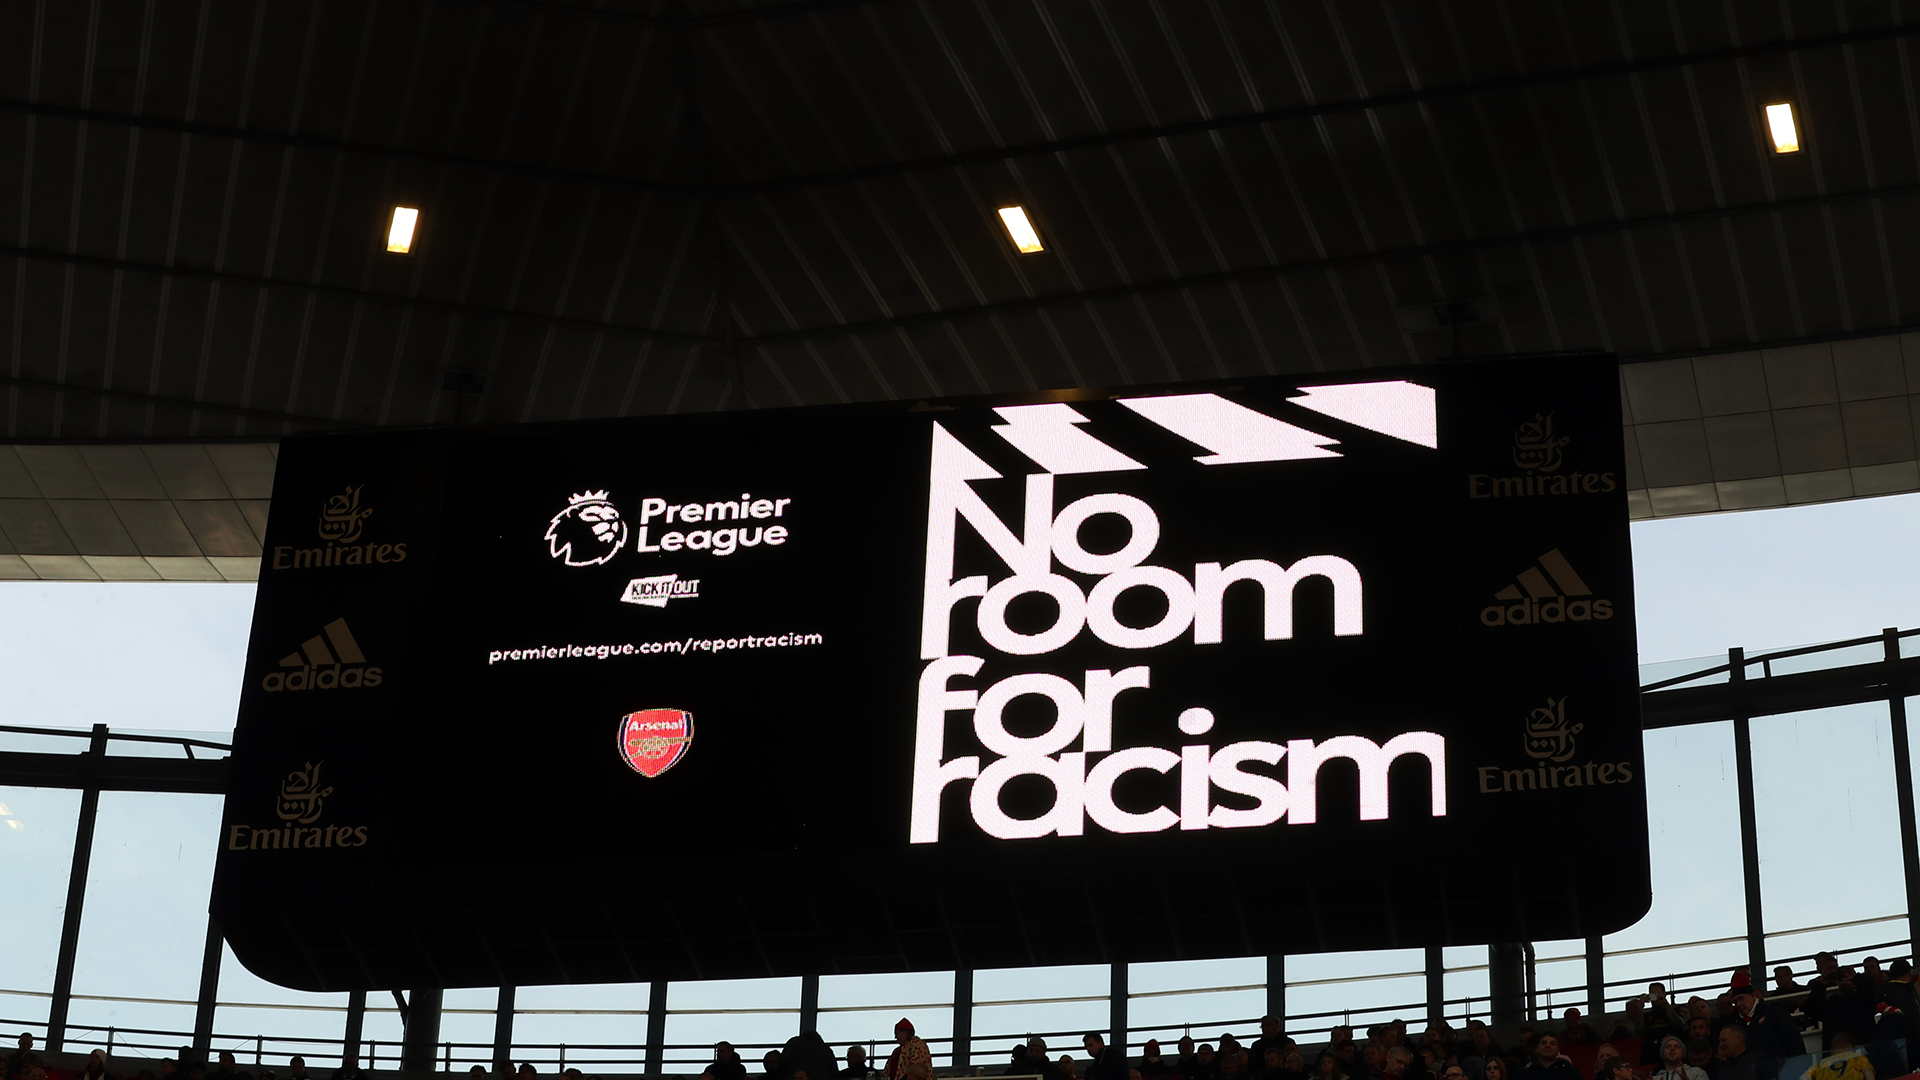 Pourquoi les clubs de Premier League boycottent-ils les réseaux sociaux? Le black-out du football anglais expliqué